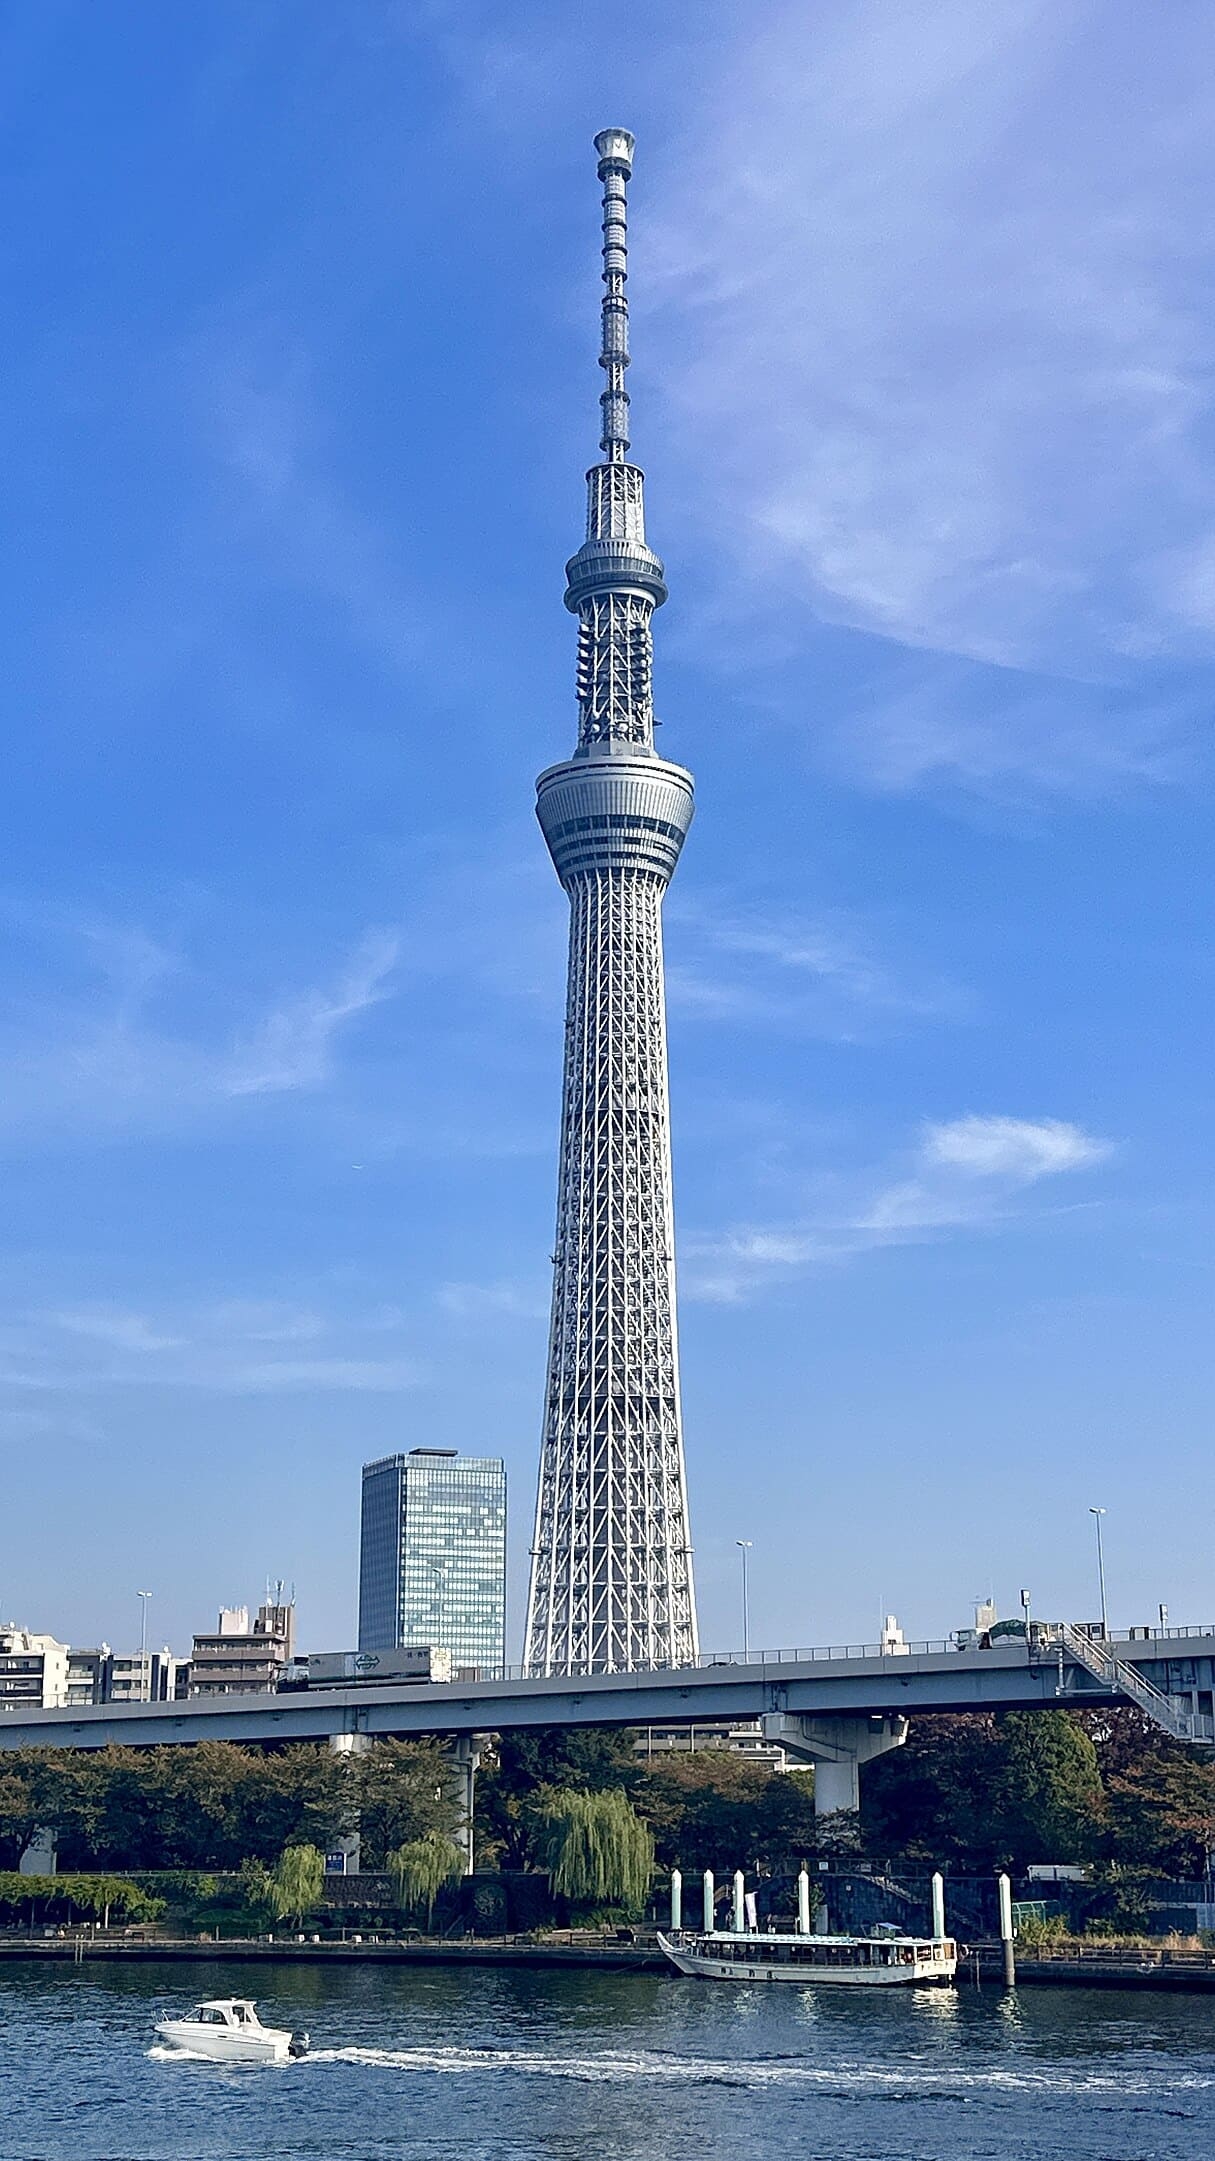 Tokyo Skytree - 634 metros - Japão - Foi concluída em 2012 na capital Tóquio, e se tornou a torre de TV mais alta do mundo naquele ano, recebendo o reconhecimento do Guinness, o livro dos recordes. Sua construção contou com 580 mil operários. Reprodução: Flipar